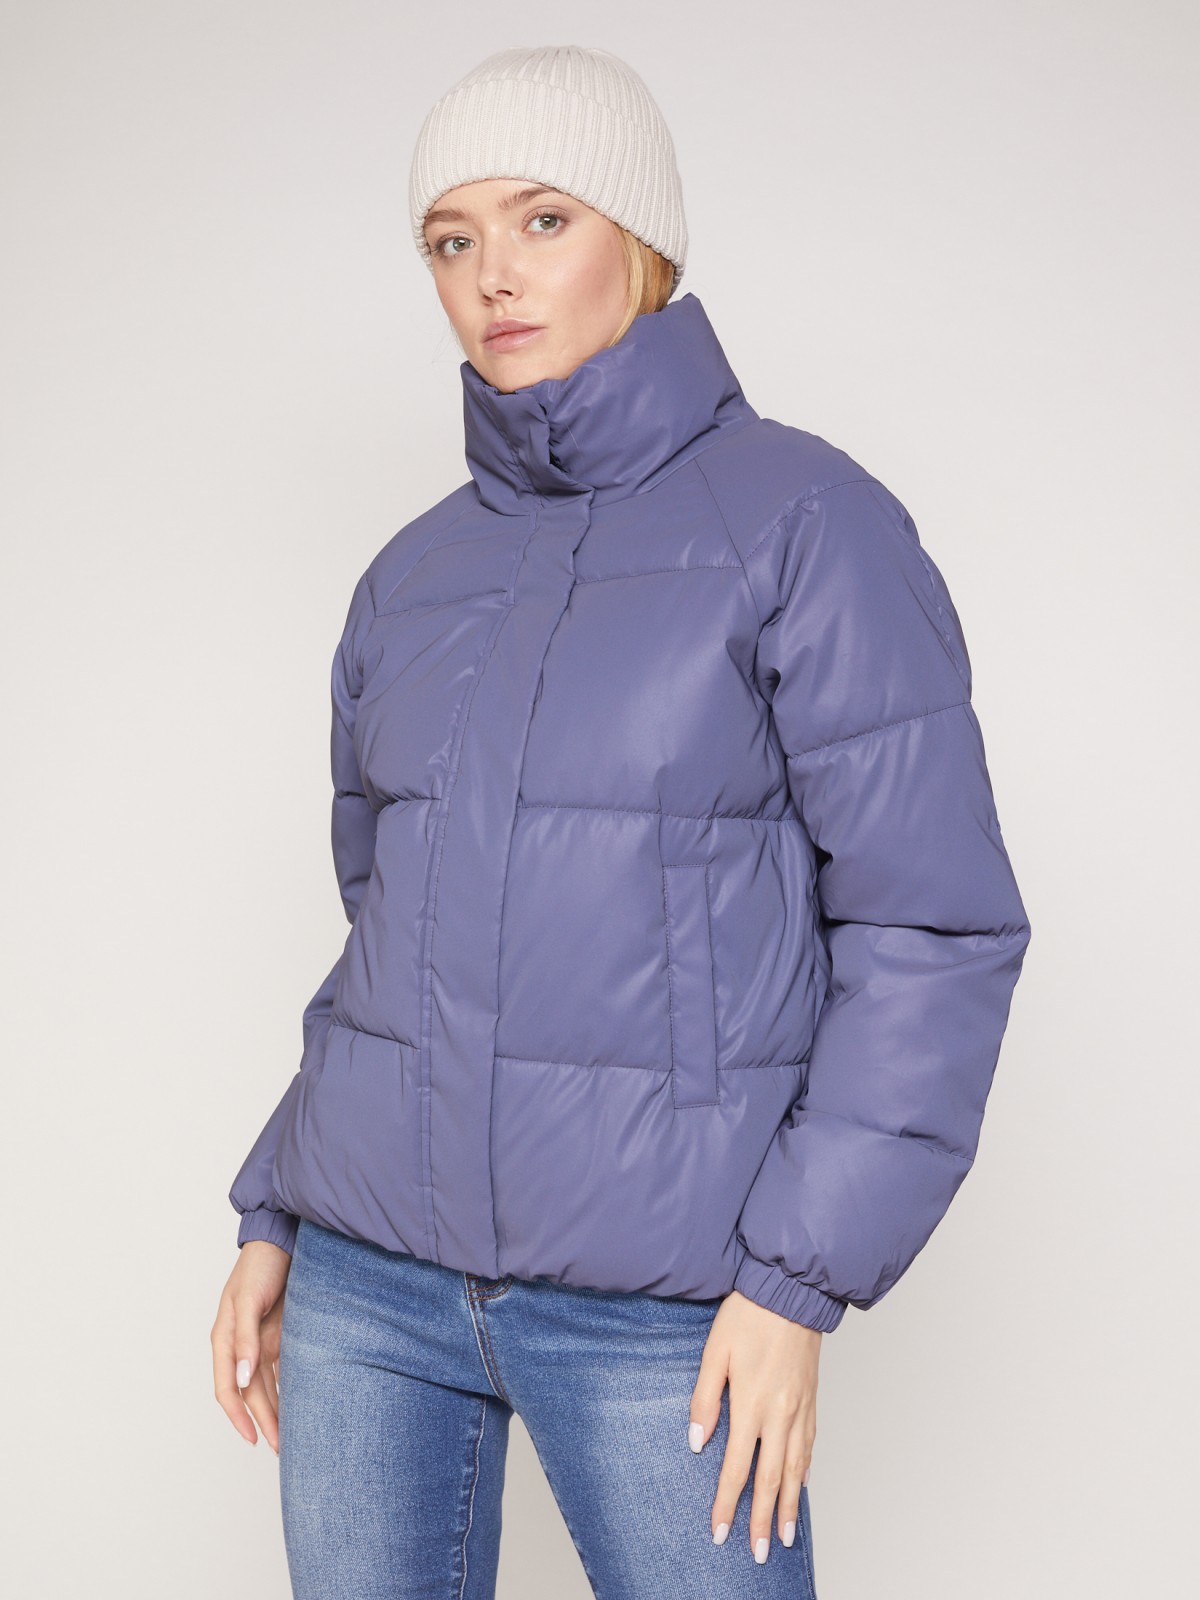 Тёплая куртка со светоотражающим эффектом zolla 021335123144, цвет сливовый, размер XS - фото 3